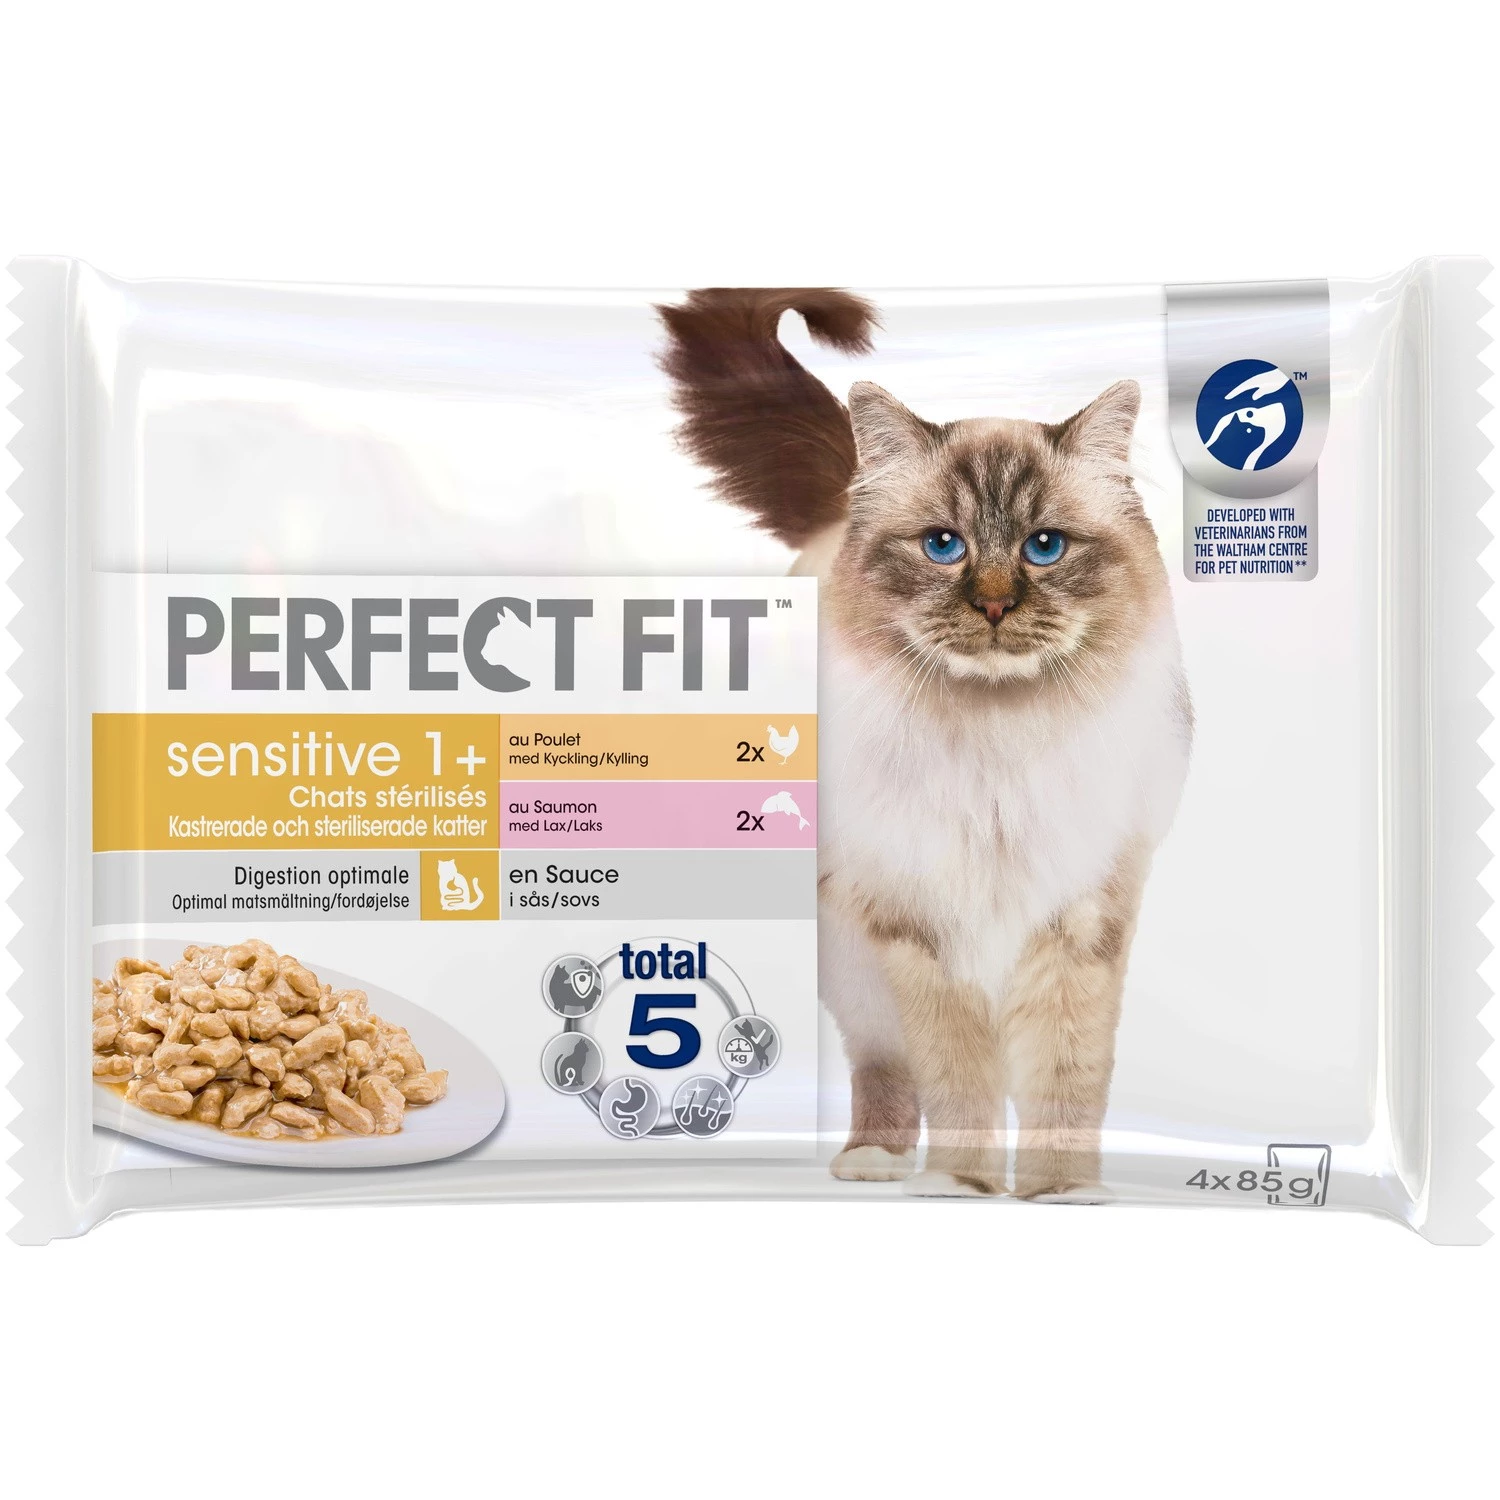 Alimentos para gatos sensíveis esterilizados sachês frescos com molho 2 variedades sensíveis 4x85g - PERFECT FIT